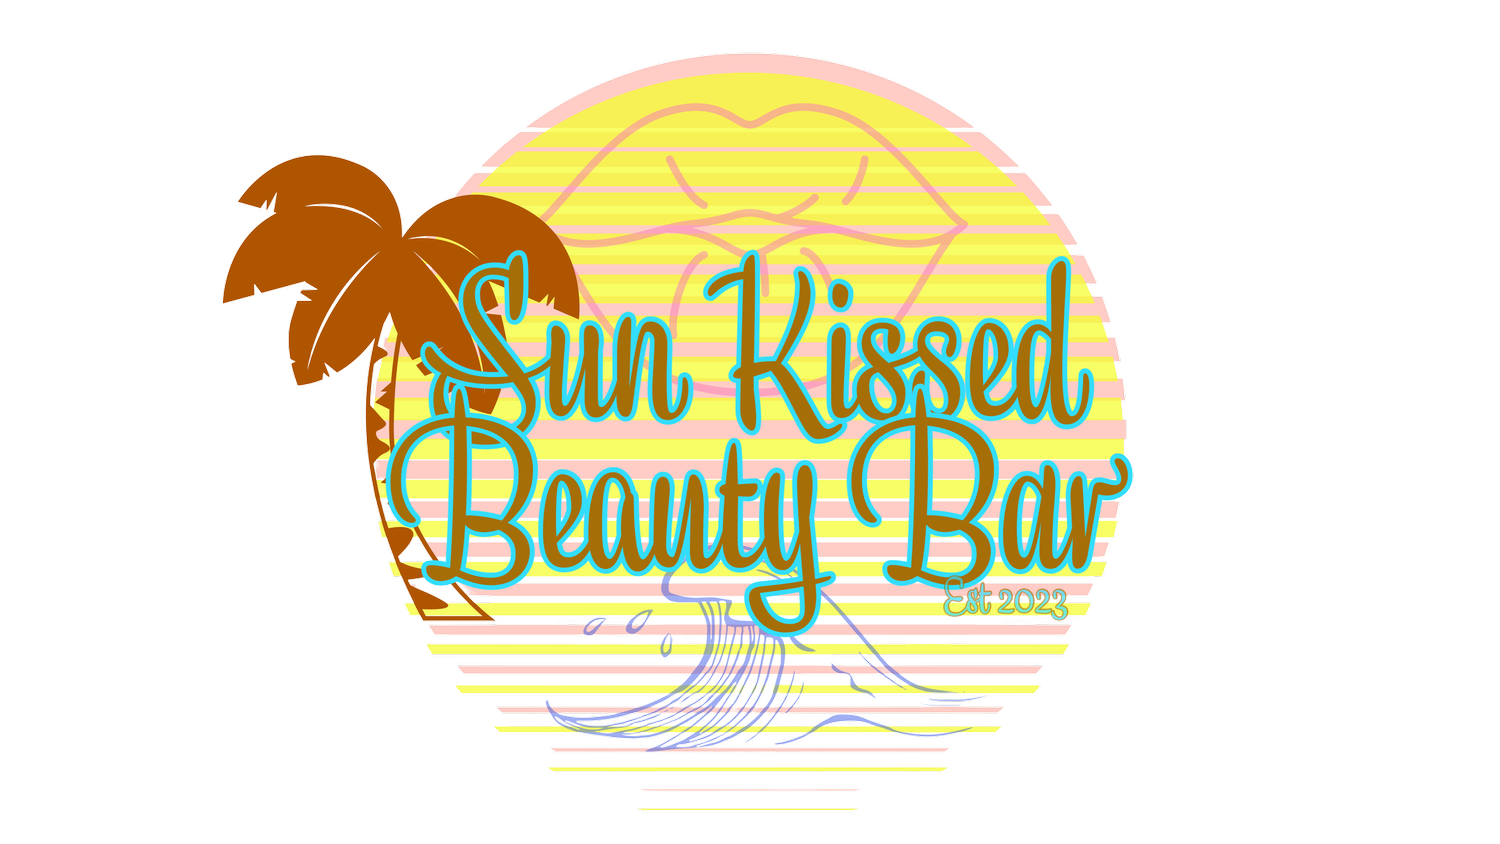 Sun Kissed Beauty Bar